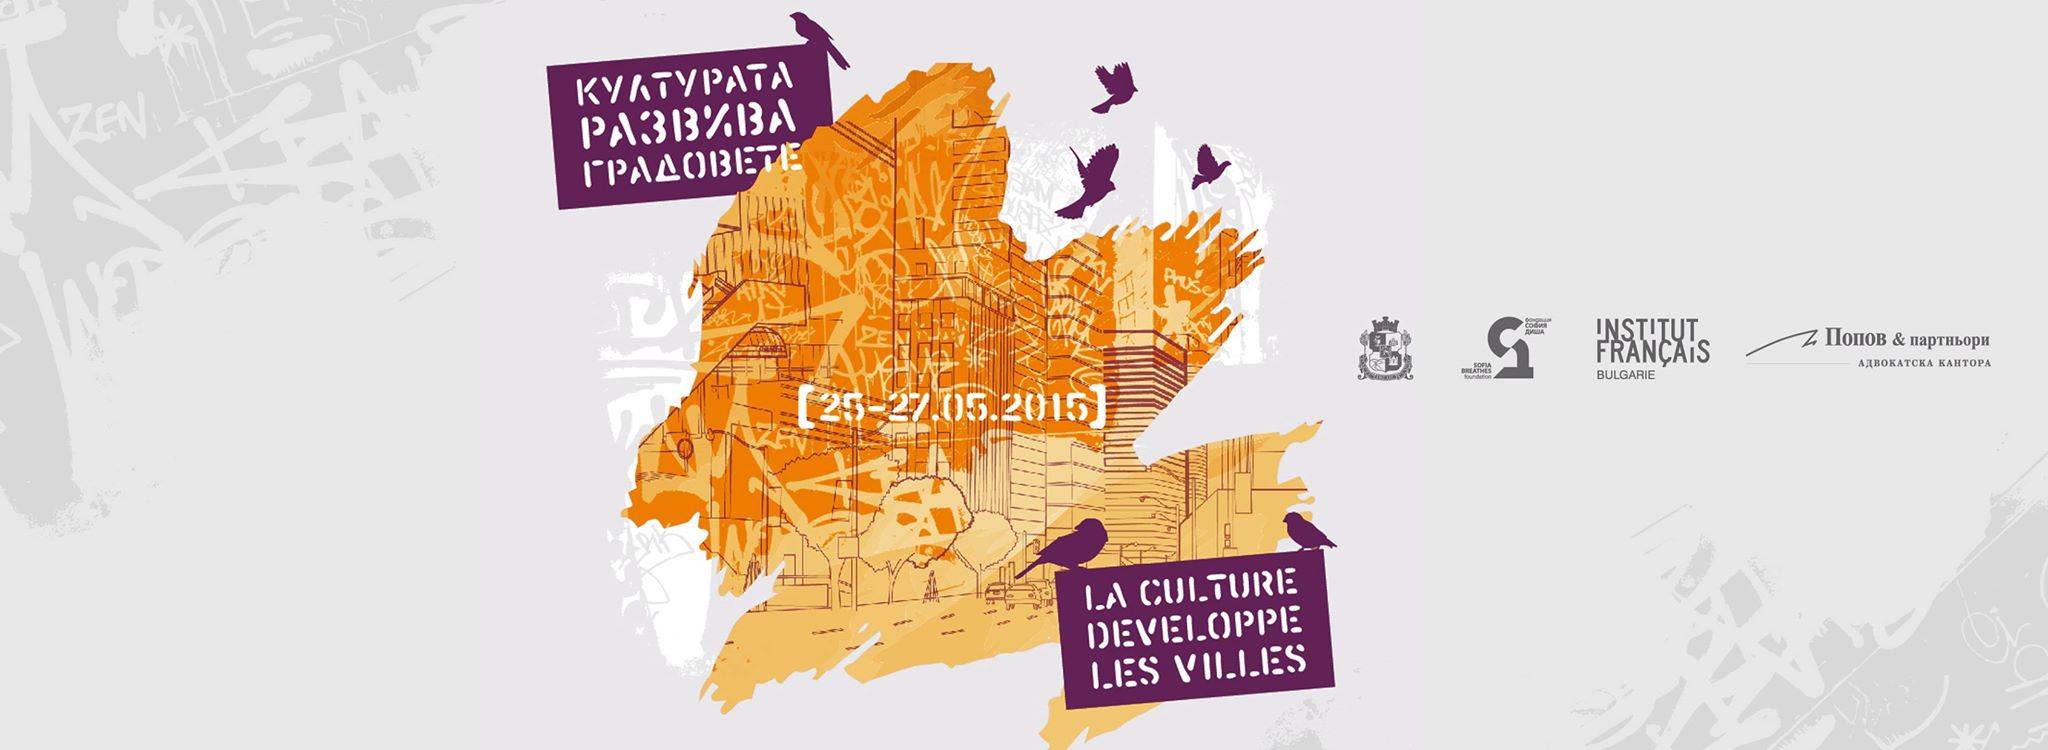 Конференцията „Културата развива градовете“ ще се проведе в София